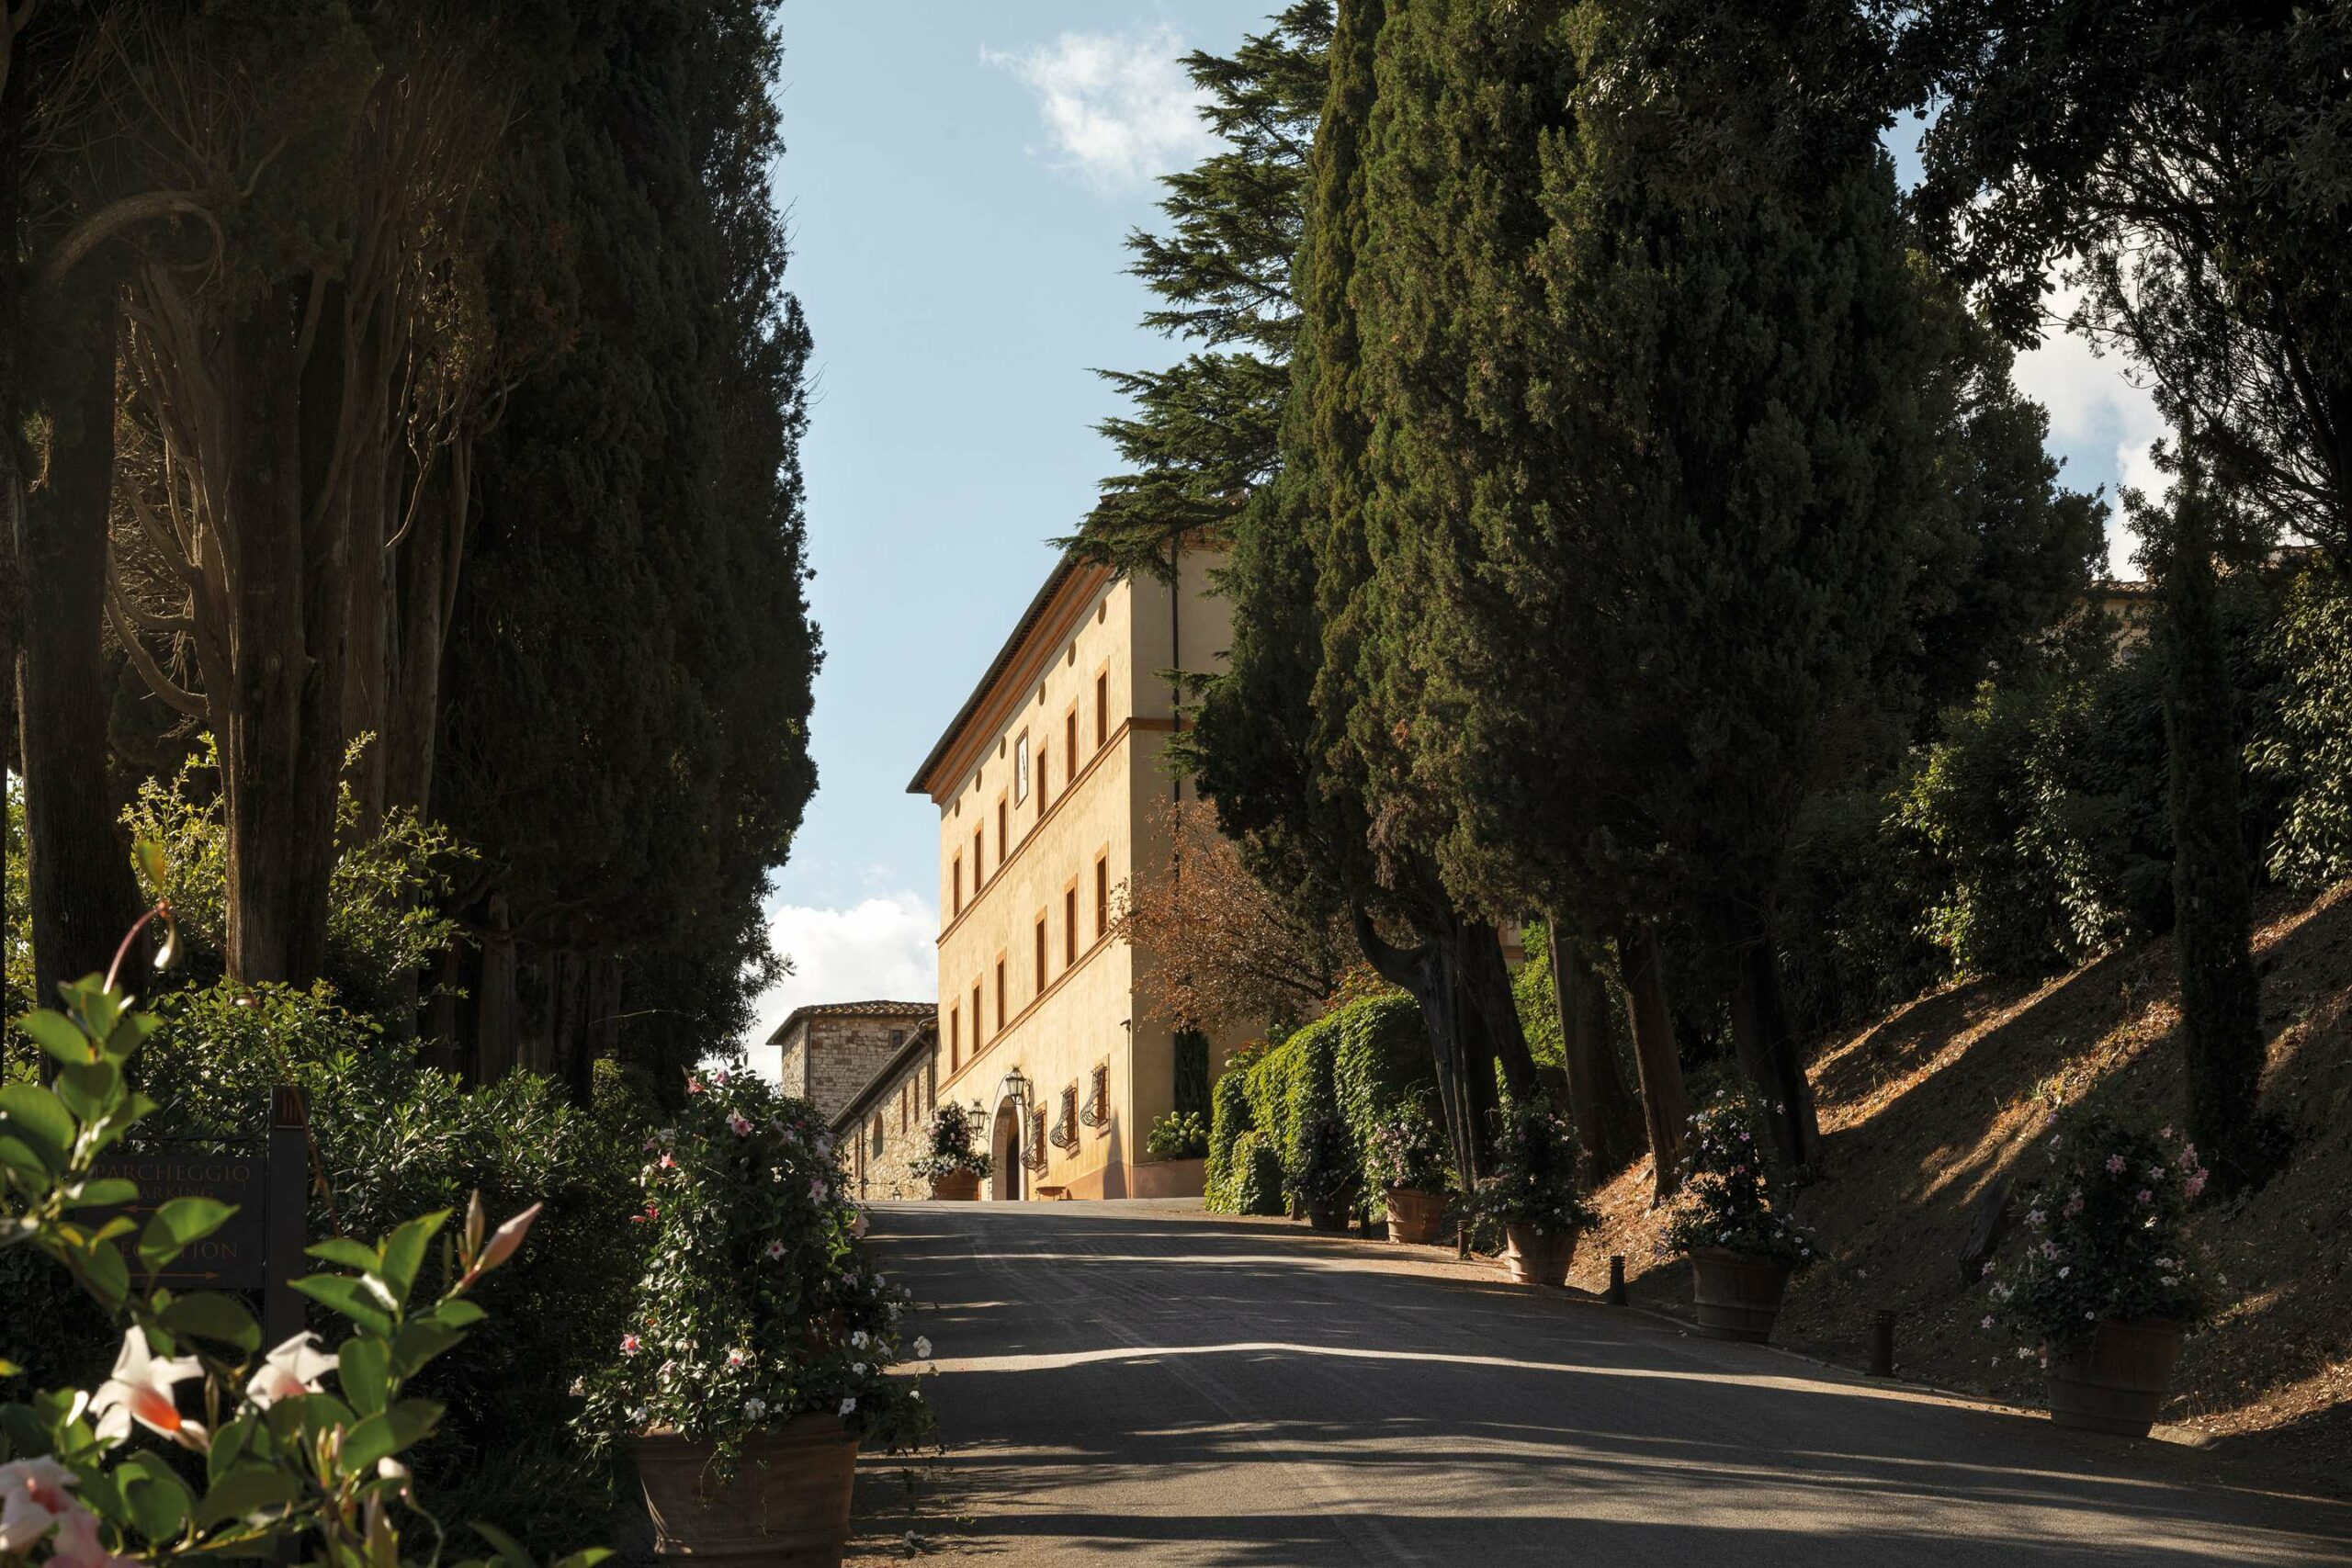 Castello di Casole, A Belmond Hotel, Tuscany<br />
Luxury Hotel Virtuoso